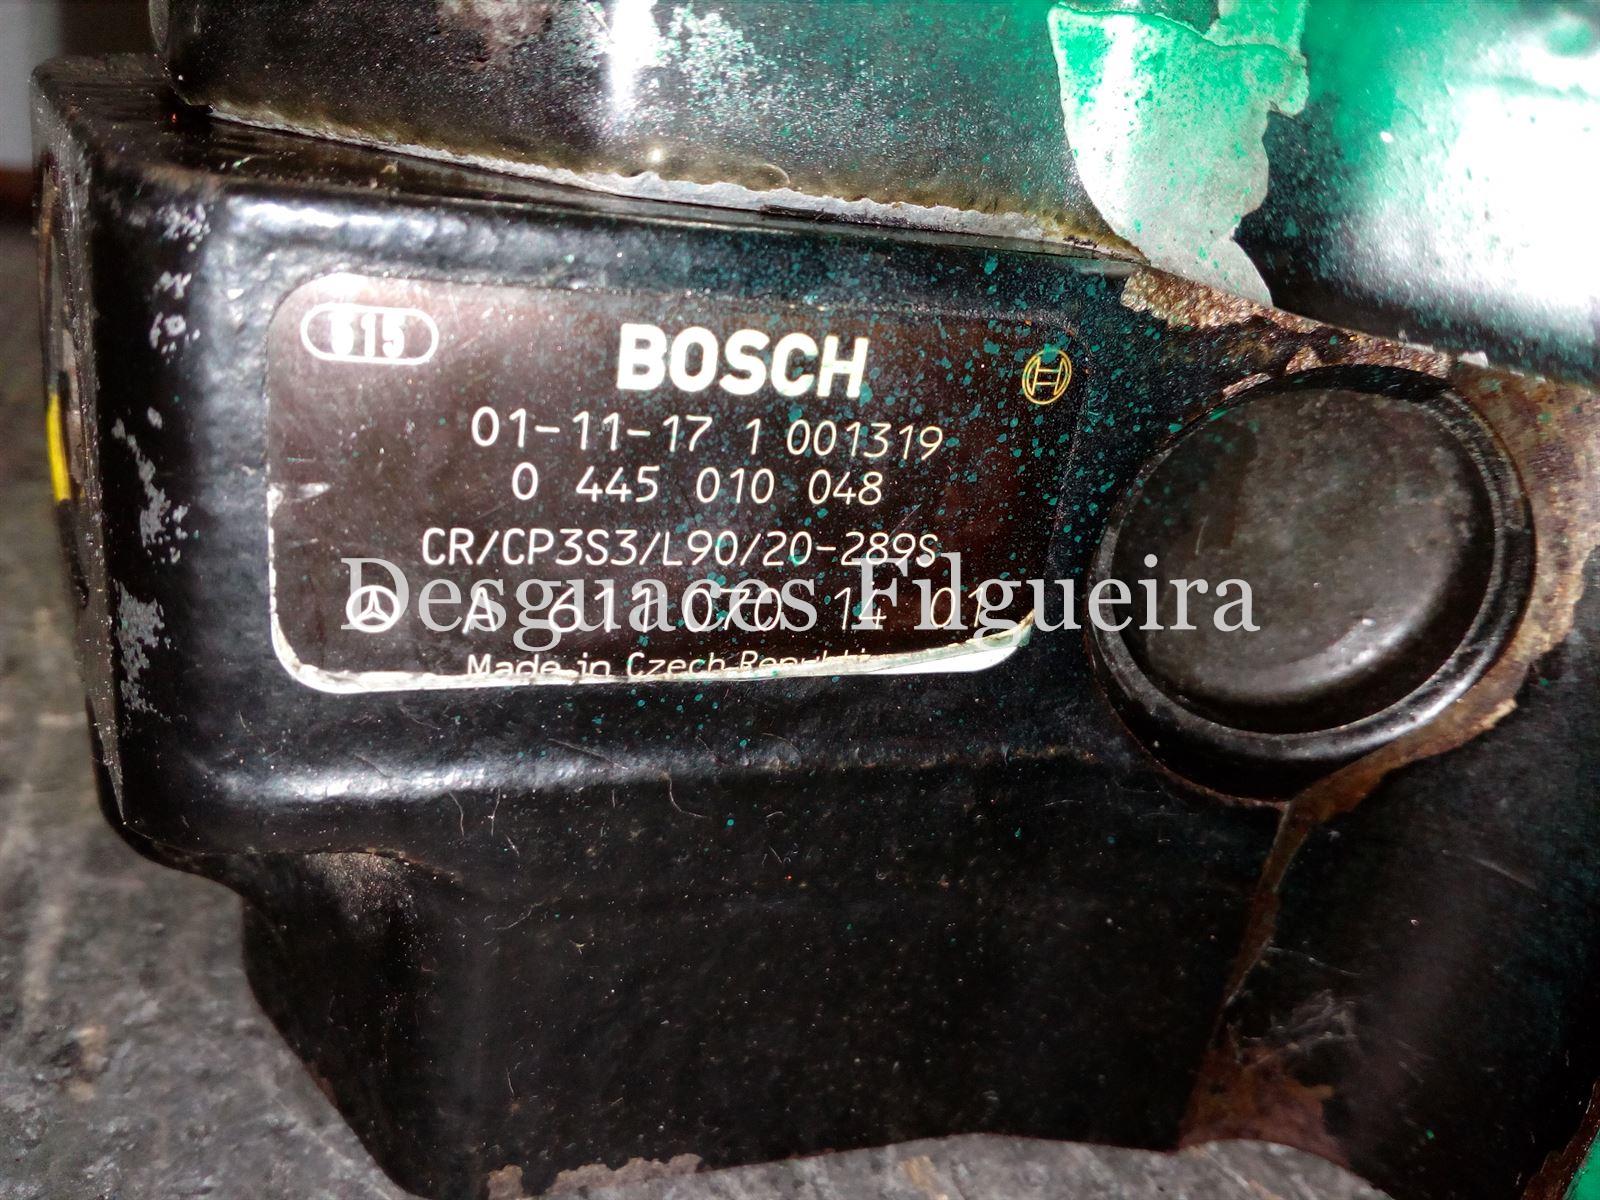 Bomba de alta Mercedes Clase E 220CDI carrocería 211 - Imagen 3